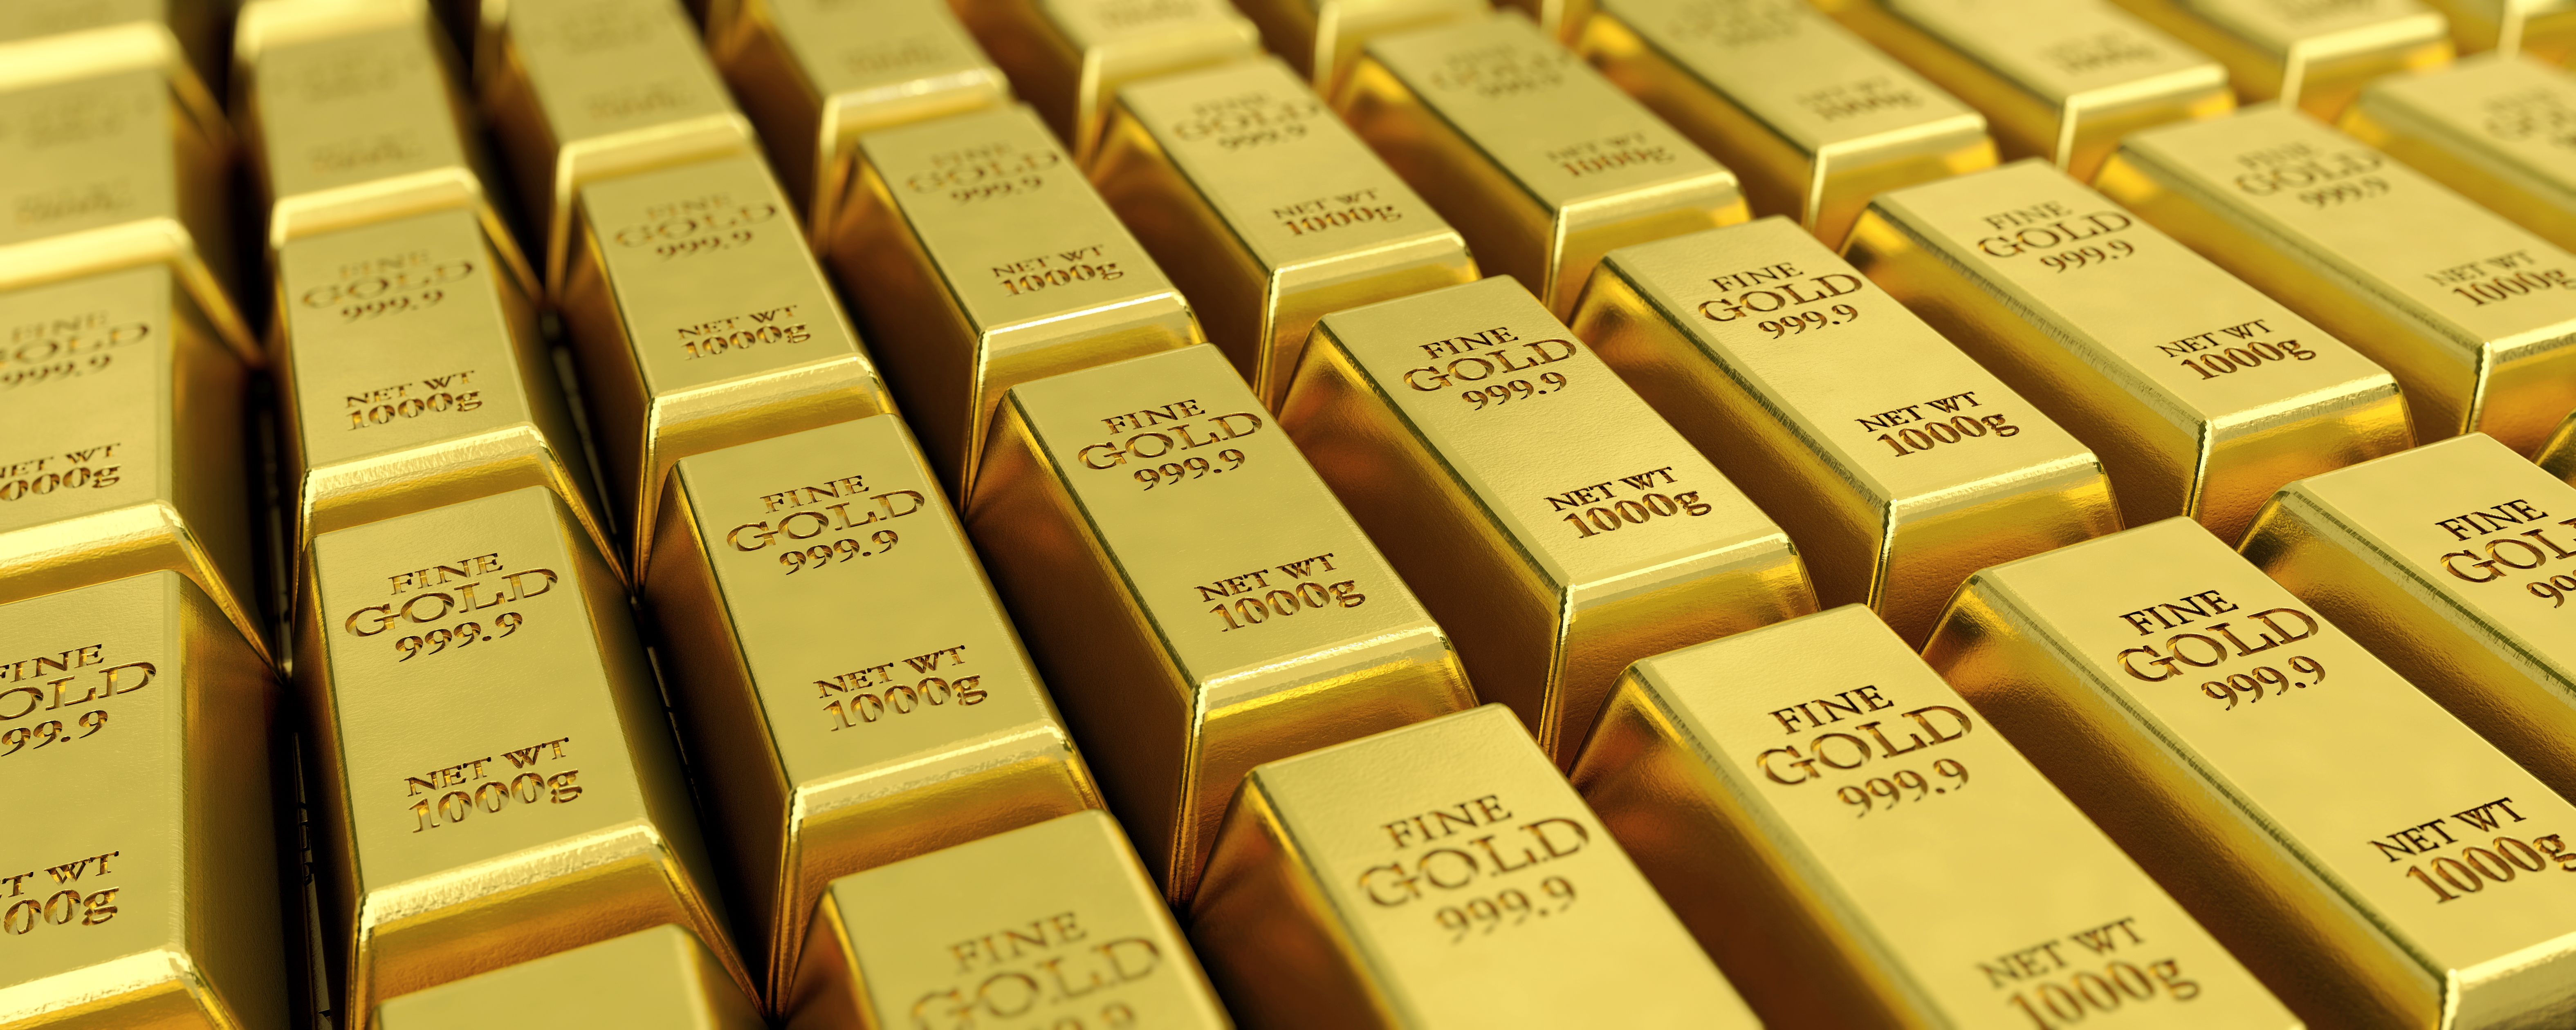 nwestowanie w złoto — jak wygląda w praktyce i czy się opłaca?